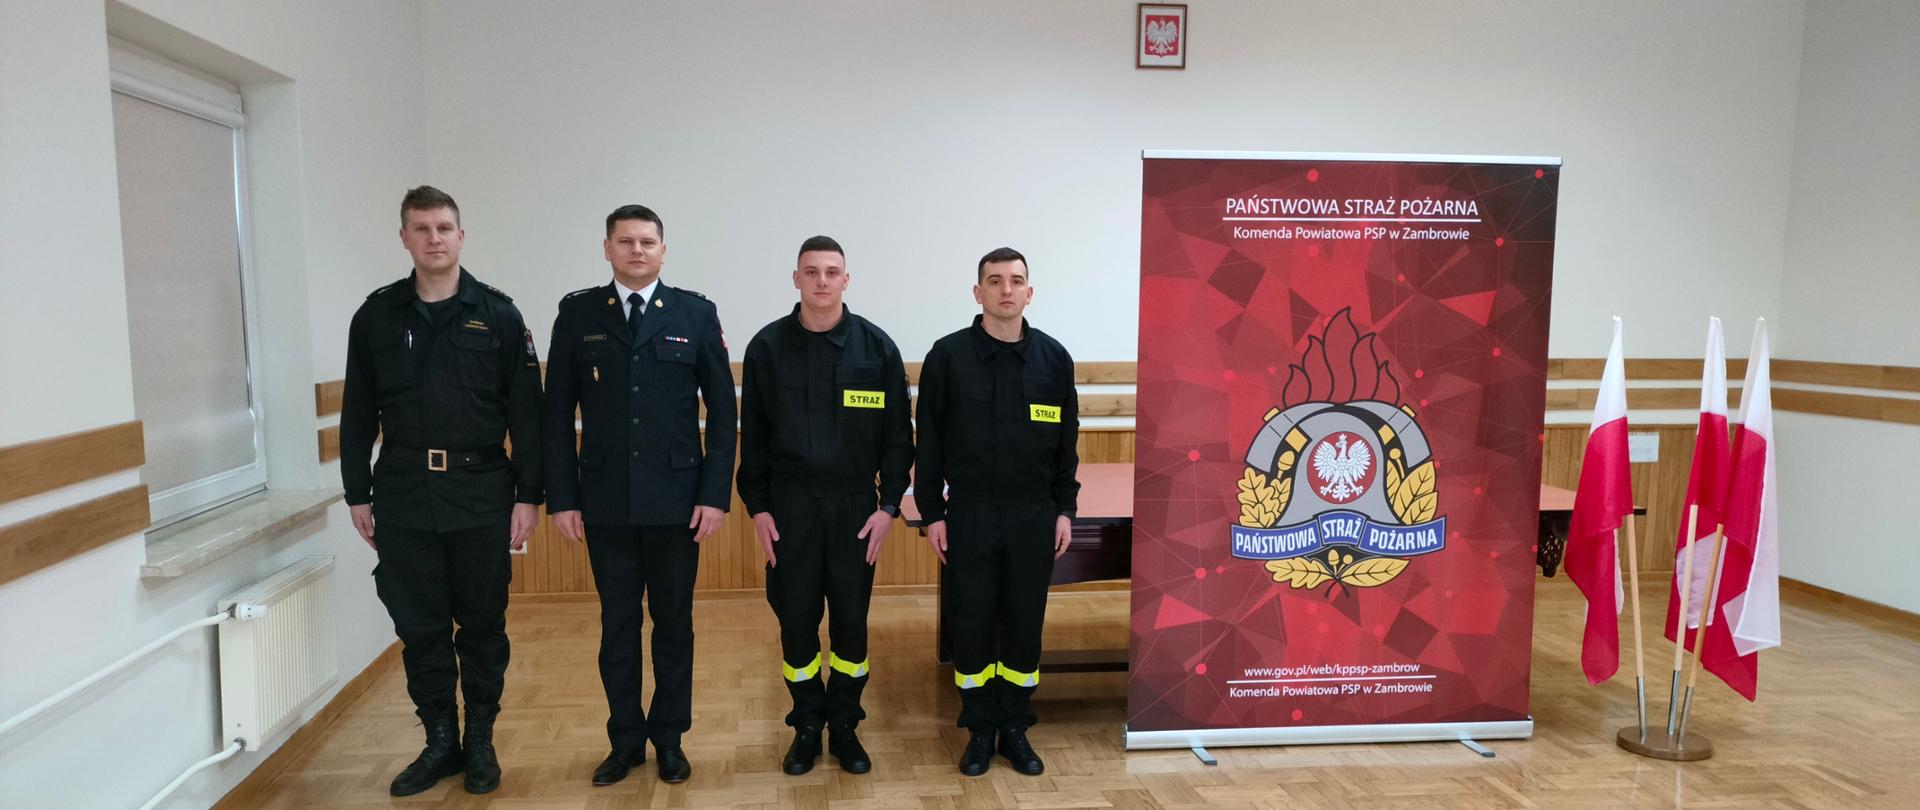 Ślubowanie nowo przyjętych strażaków w Komendzie Powiatowej Państwowej Straży Pożarnej w Zambrowie.